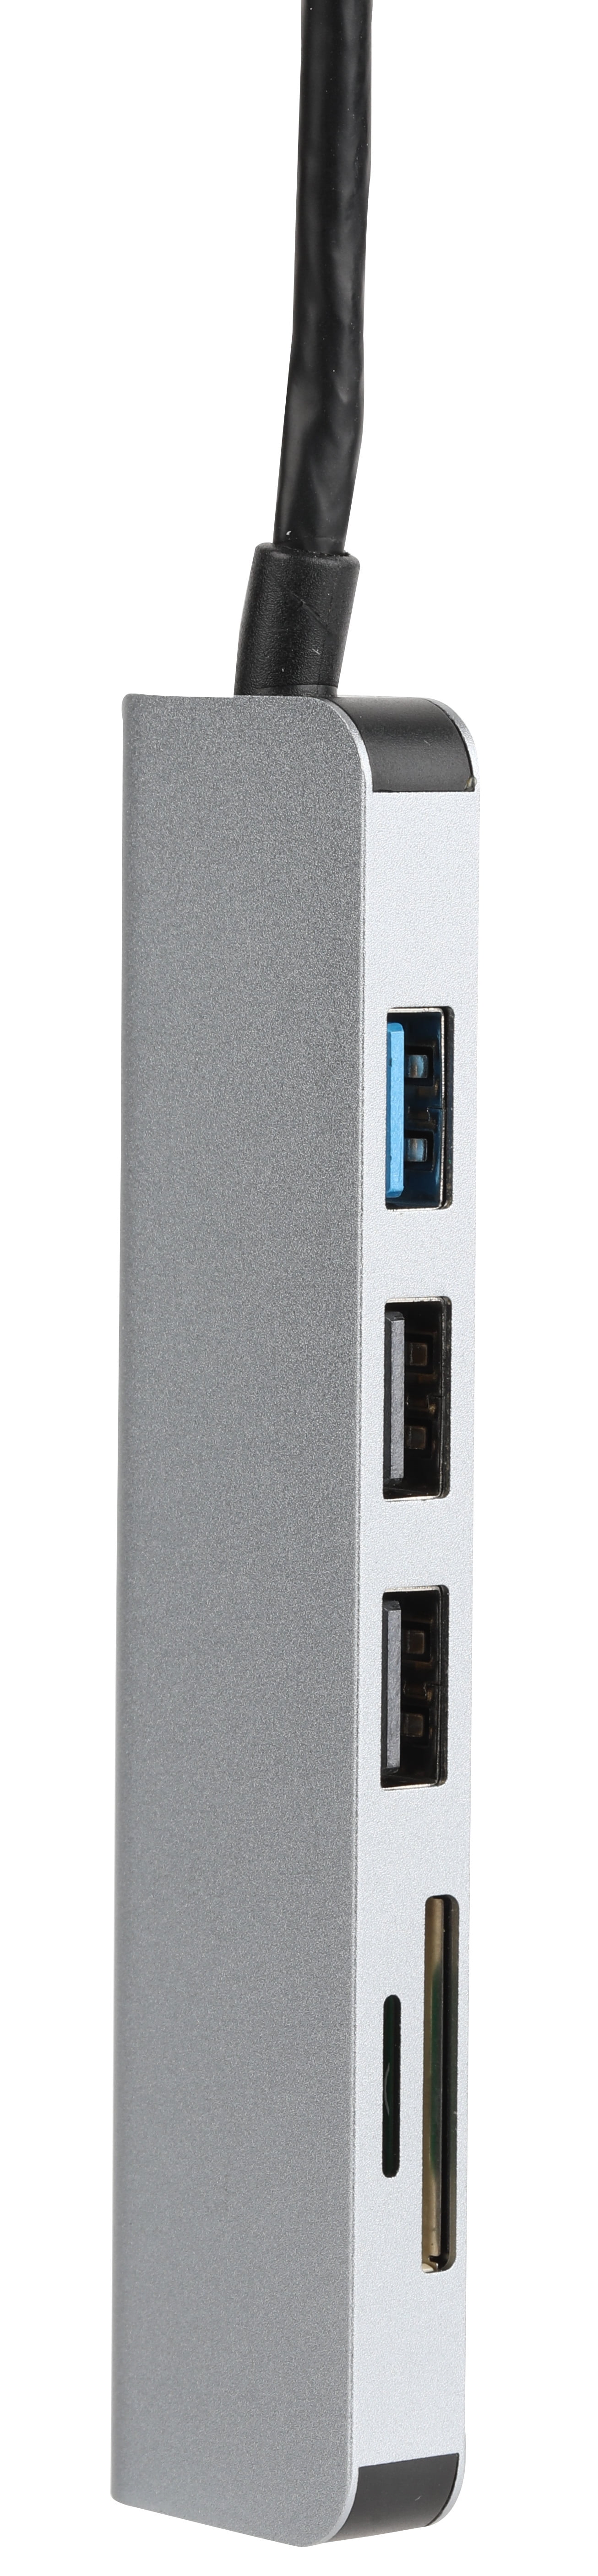 Vivitar Multi-Port USB Hub with SD, Micro SD and Compact Flash